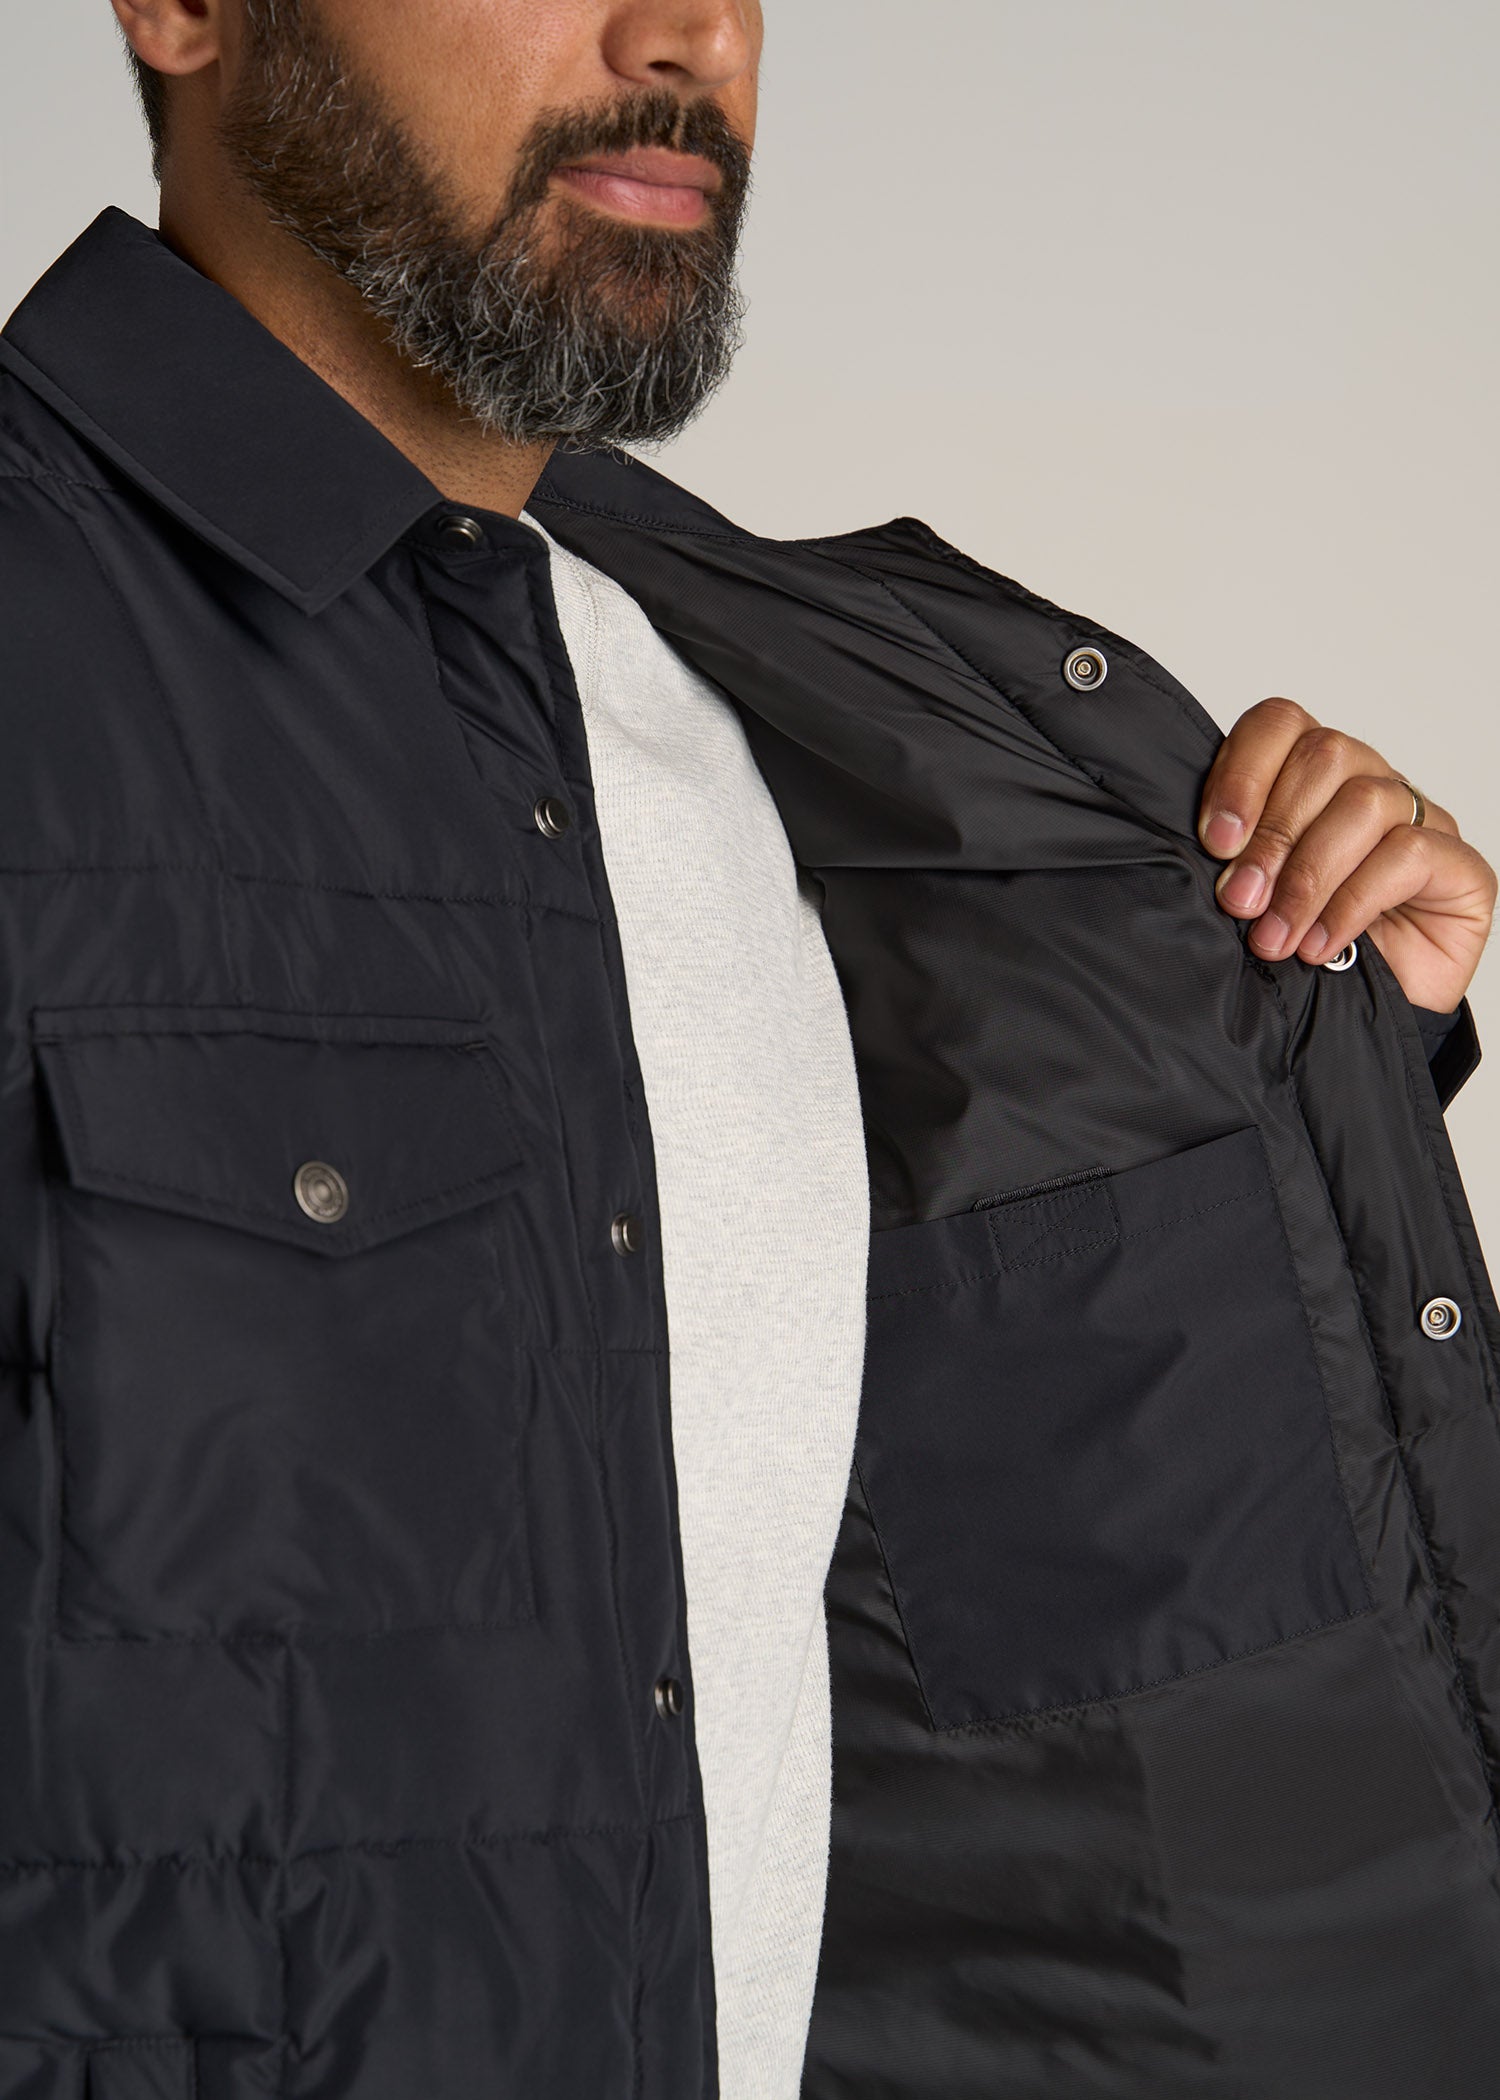 LJ-Puffer-Shirt-Jacket-Black-detail